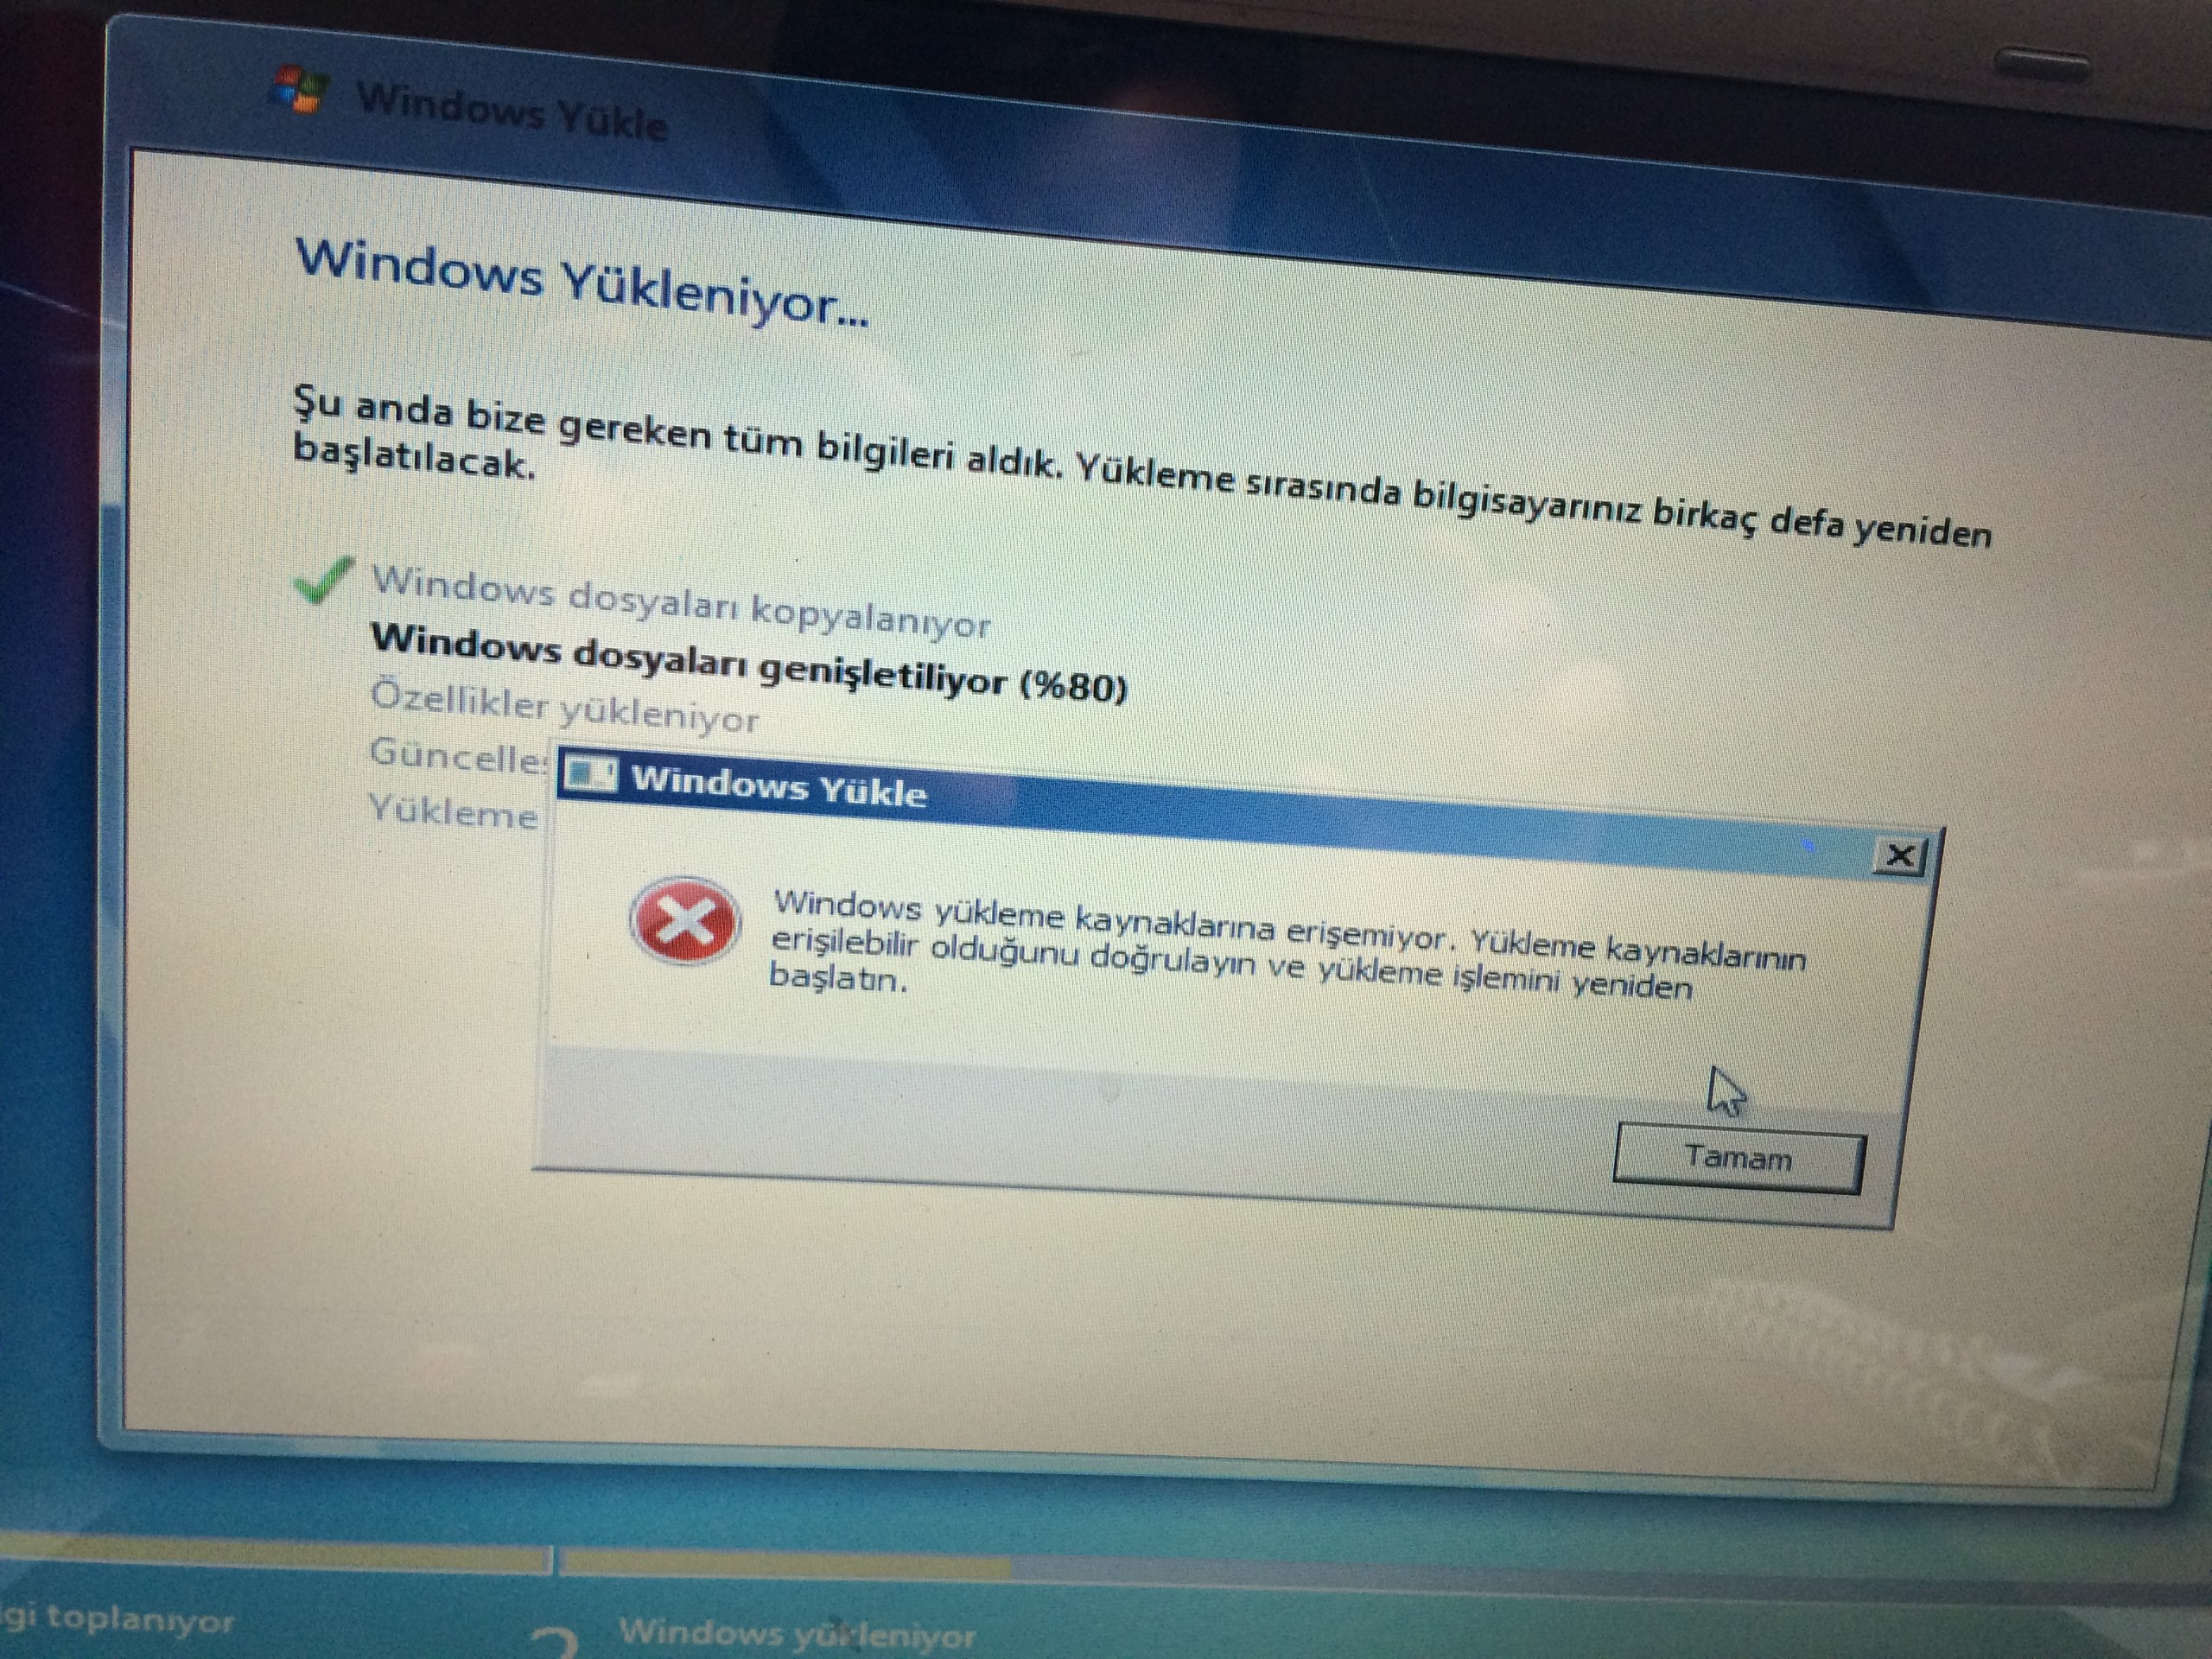  Format atarken 'Windows yükleme kaynaklarına erişemiyor' Sorunu... Lütfen yardım